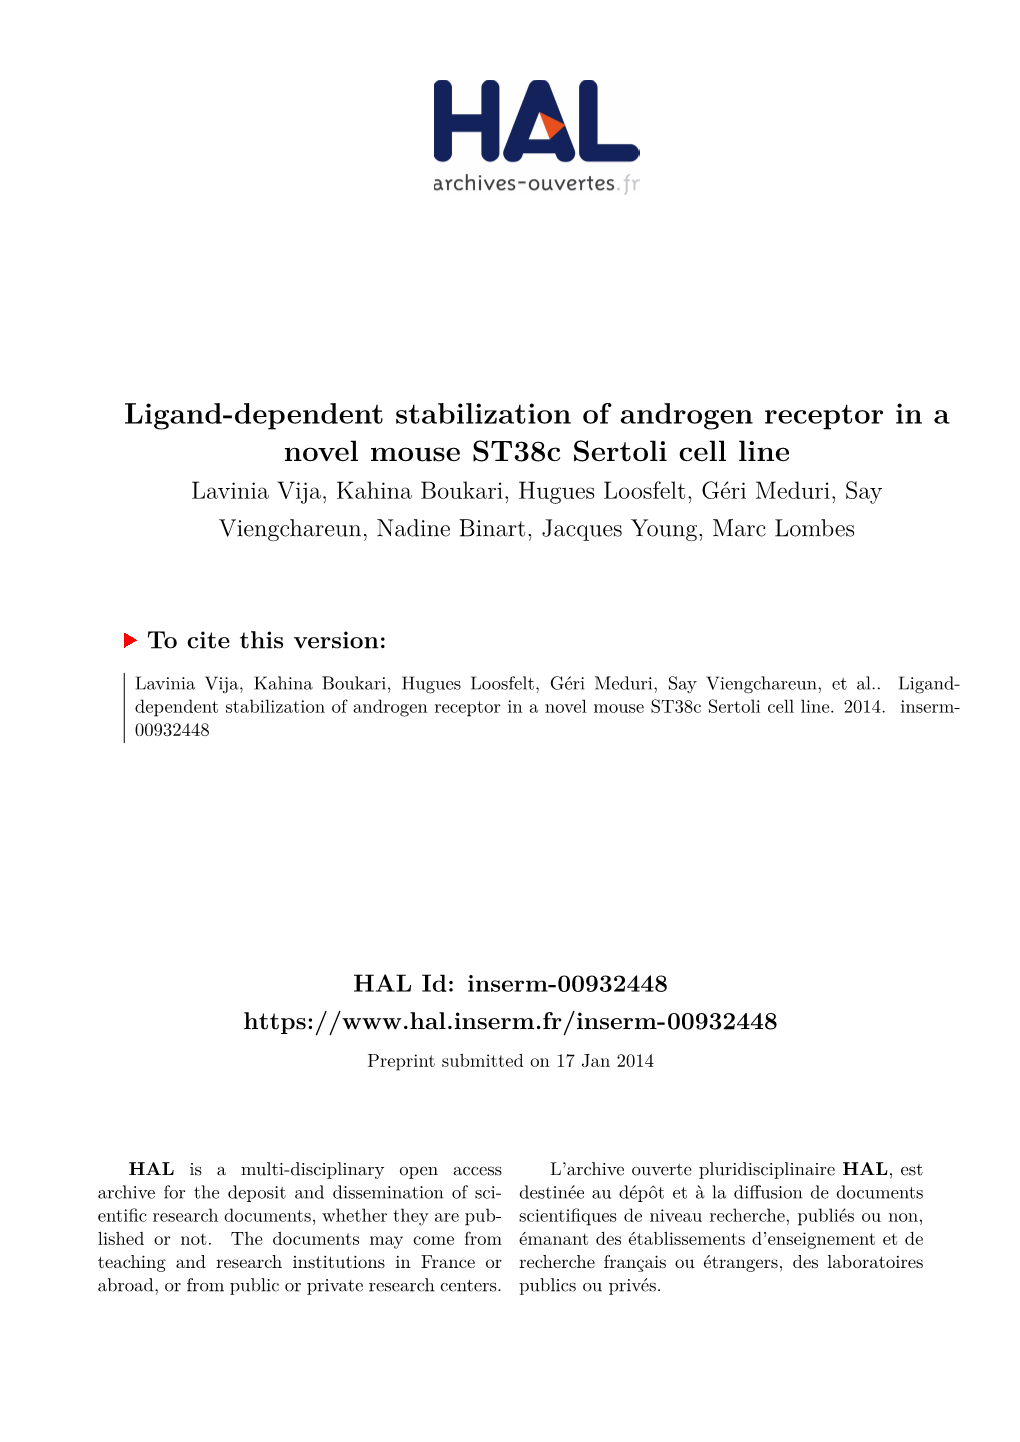 Ligand-Dependent Stabilization of Androgen Receptor in a Novel